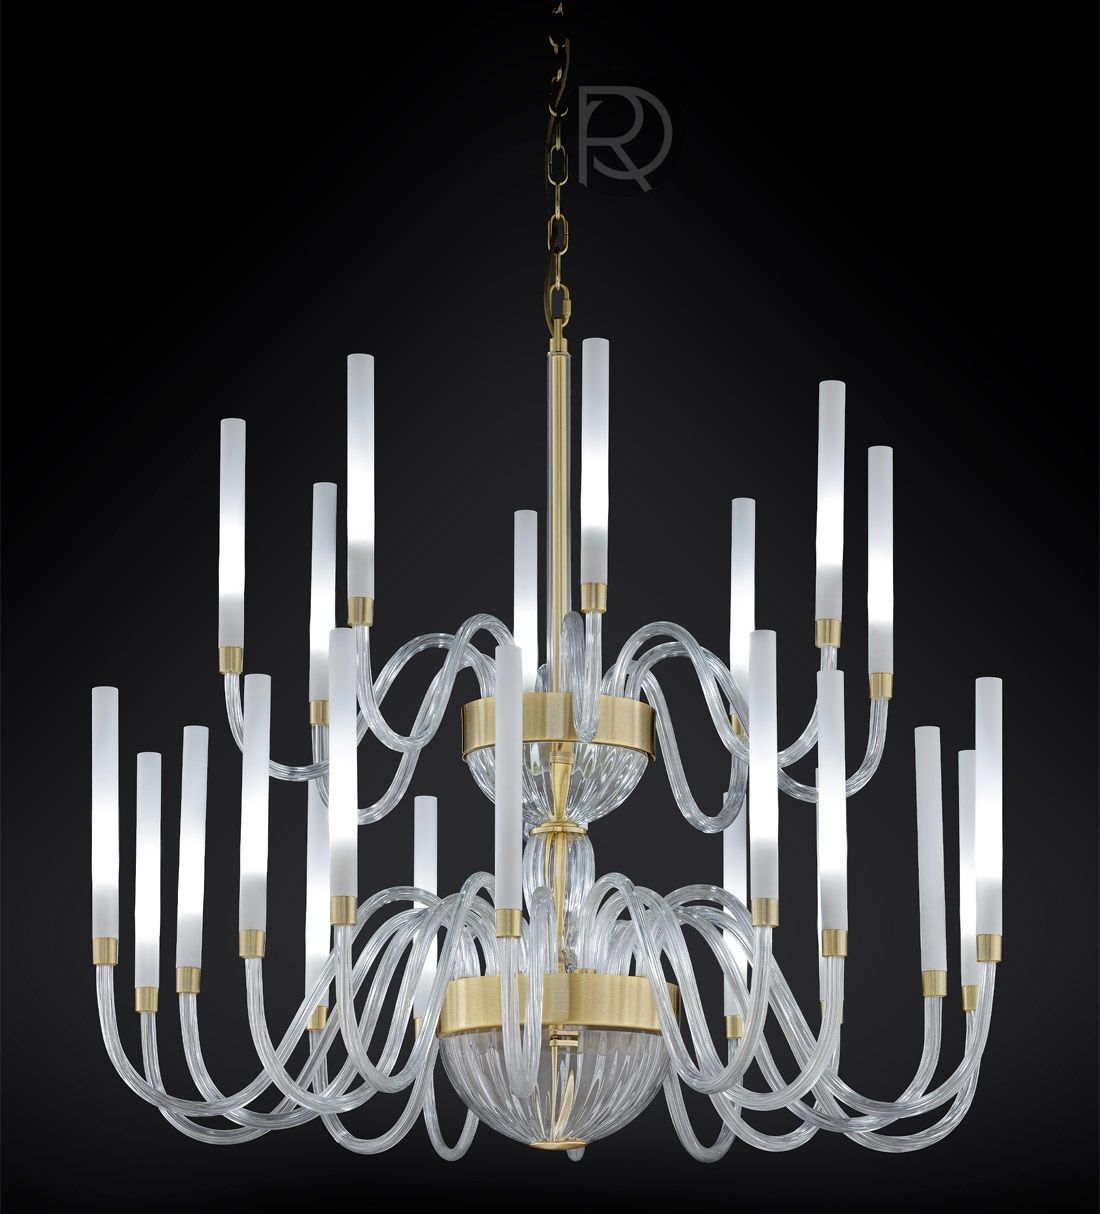 TYRA chandelier by Euroluce